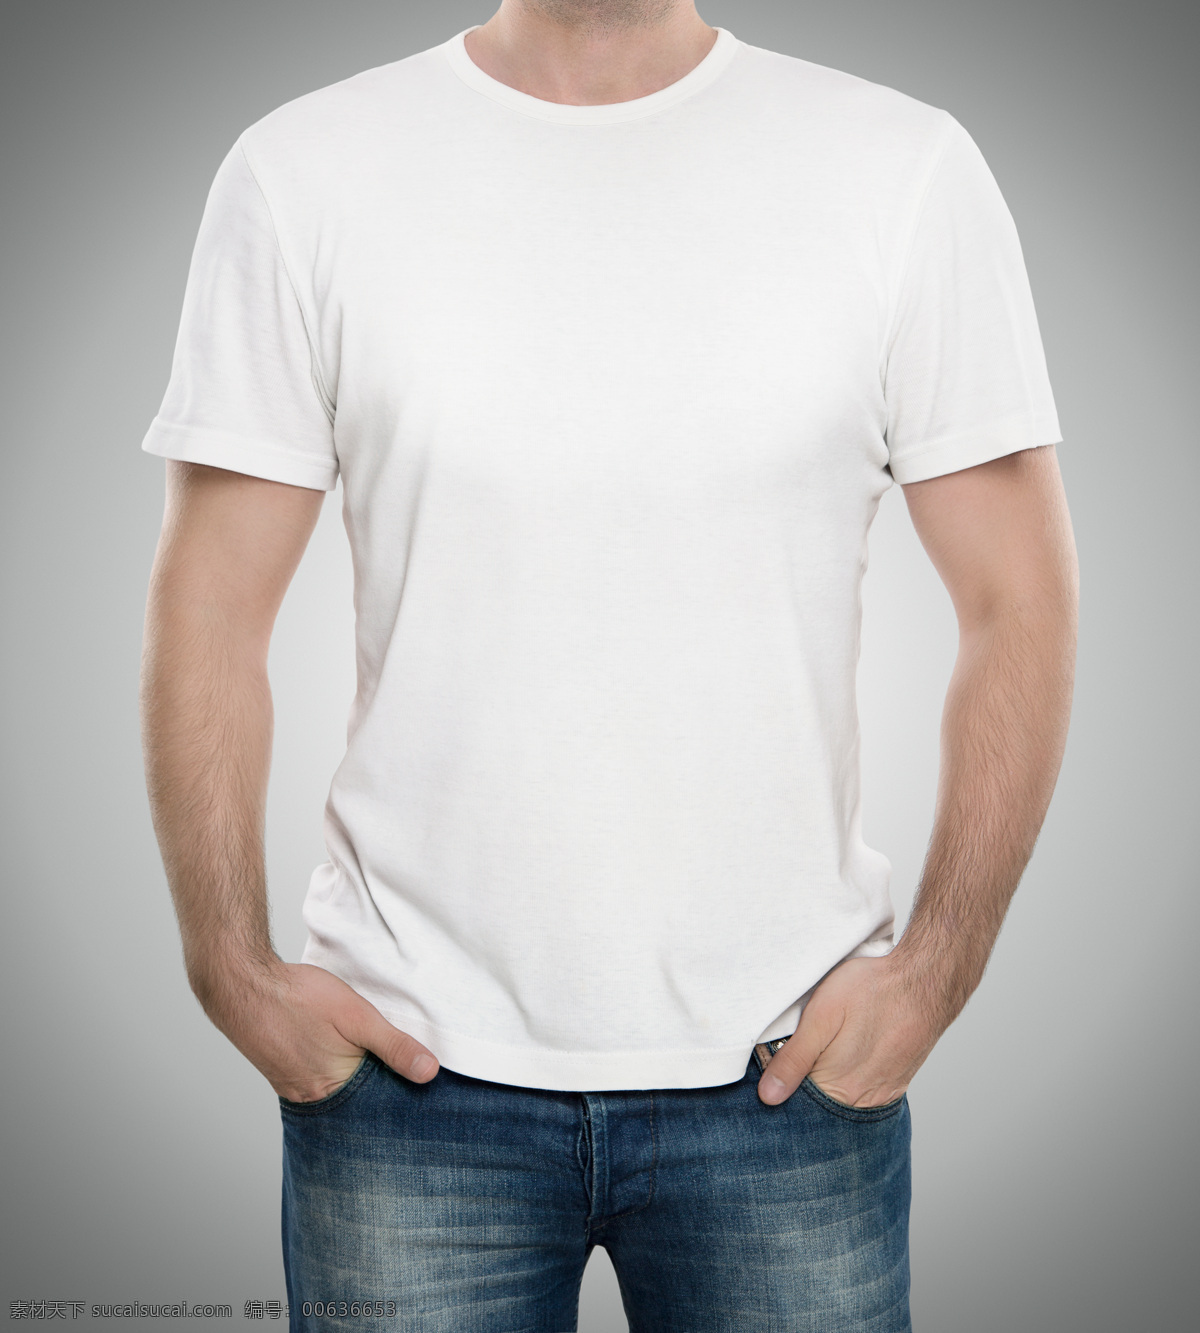 简洁 短袖 t 恤 男士空白t恤 短袖t恤衫 tt恤设计 服装设计 白色t恤 珠宝服饰 生活百科